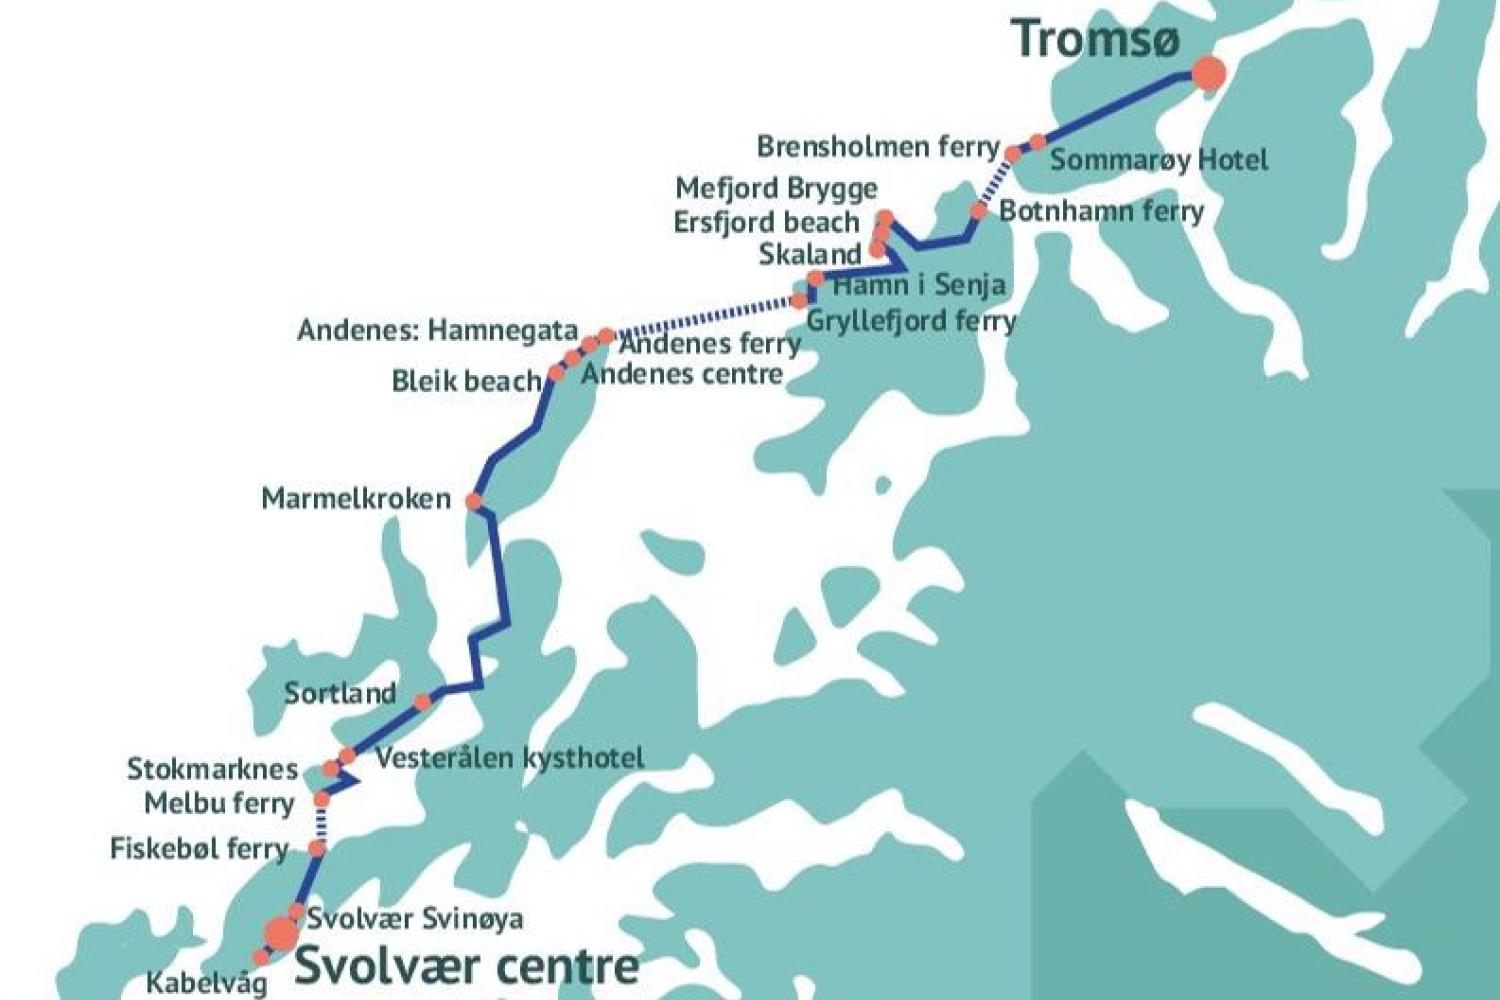 Arctic Route Tromsø - Senja - Vesterålen - Lofoten - Tromsø